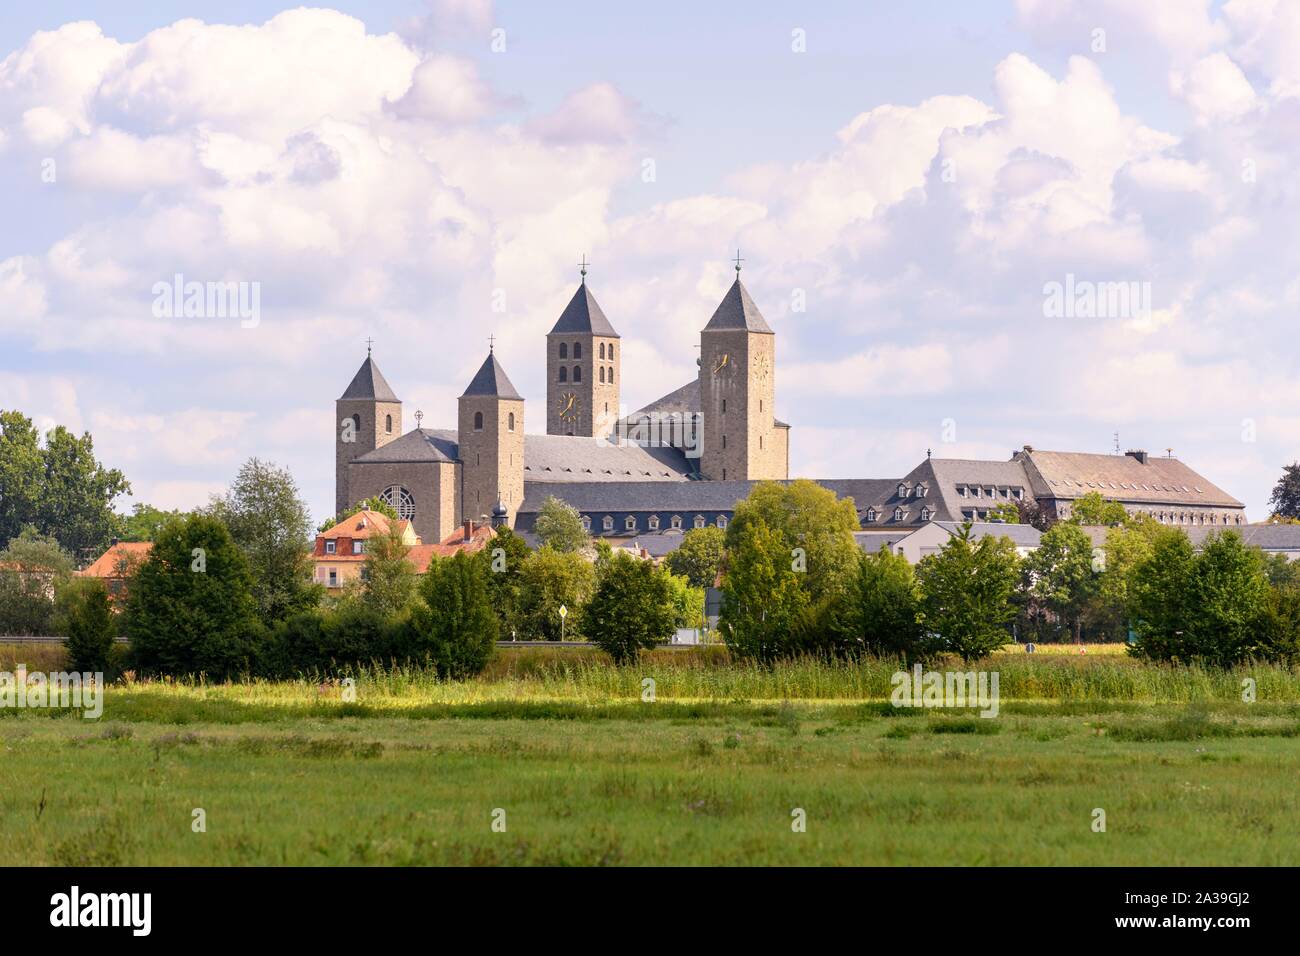 Benedictine Abbey Munsterschwarzach in Schwarzach, Lower Franconia, Bavaria, Germany Stock Photo